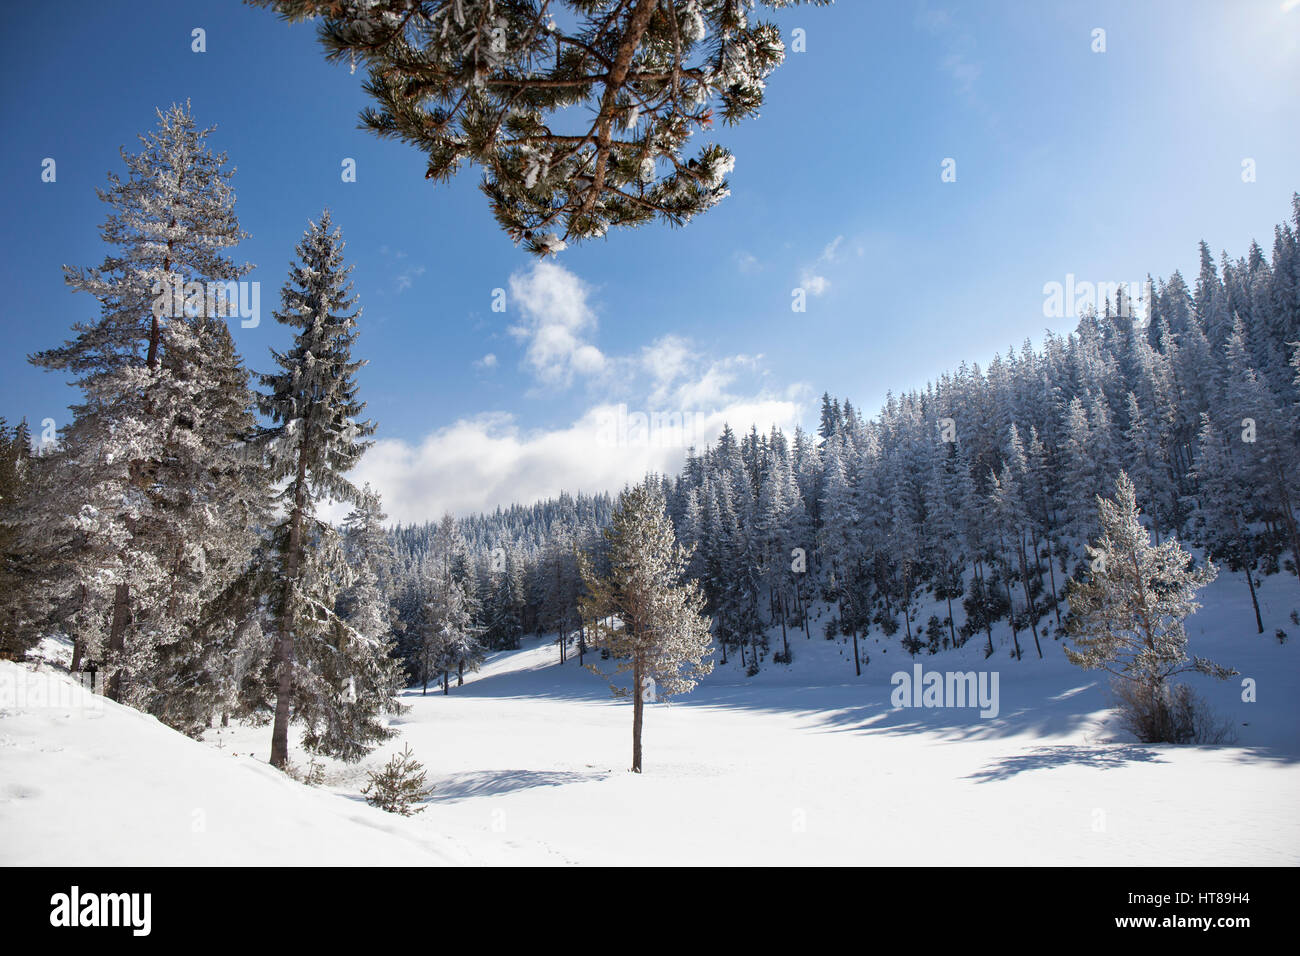 Dans un paysage d'hiver ensoleillé clair de pins couverts de neige dans une petite clairière. Banque D'Images